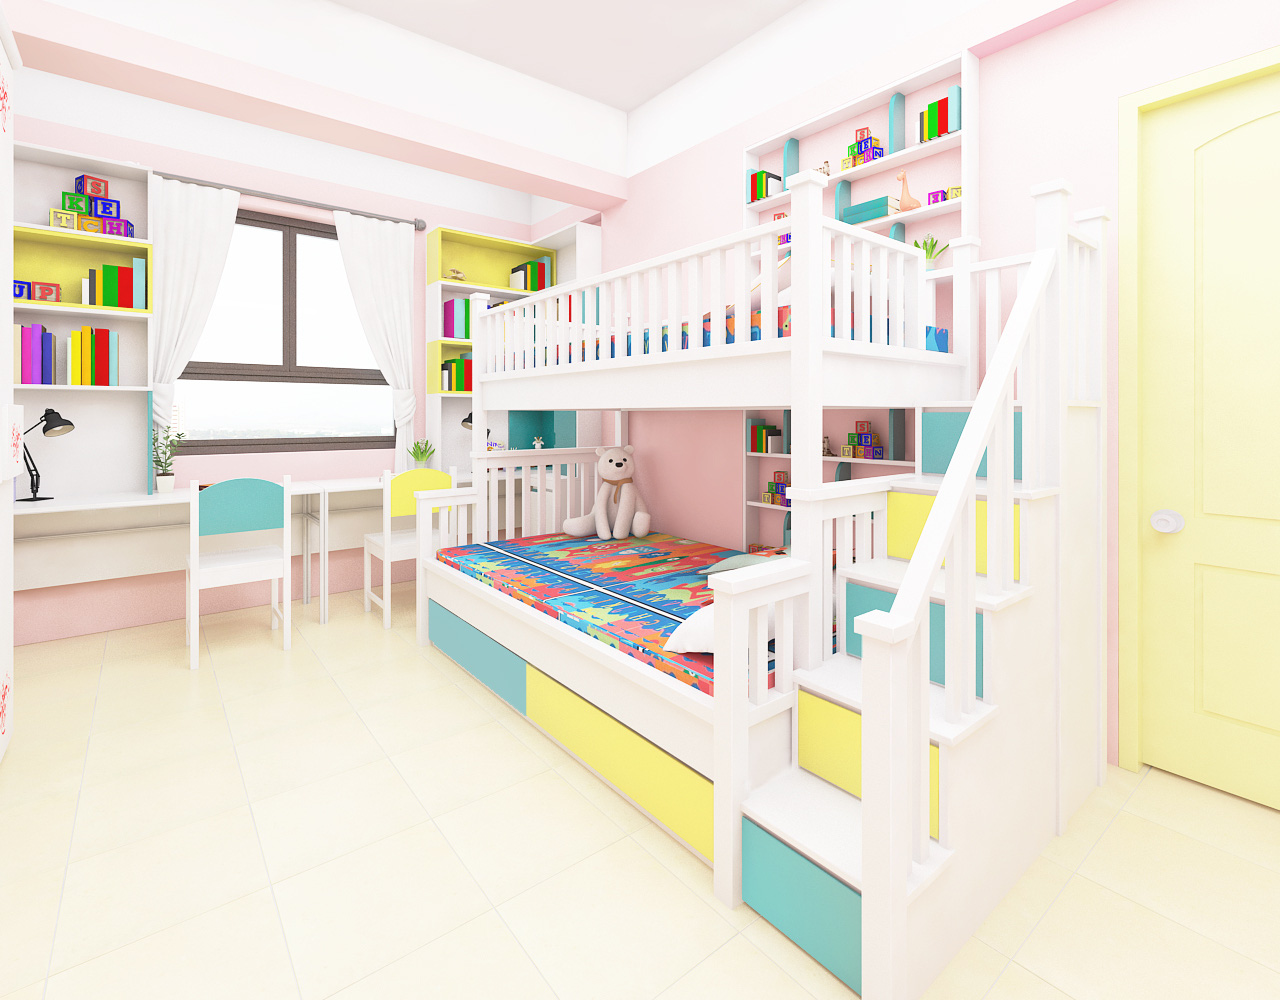 Hình ảnh phòng ngủ của hai bé gái với giường tầng, bàn học, giá sách màu sắc